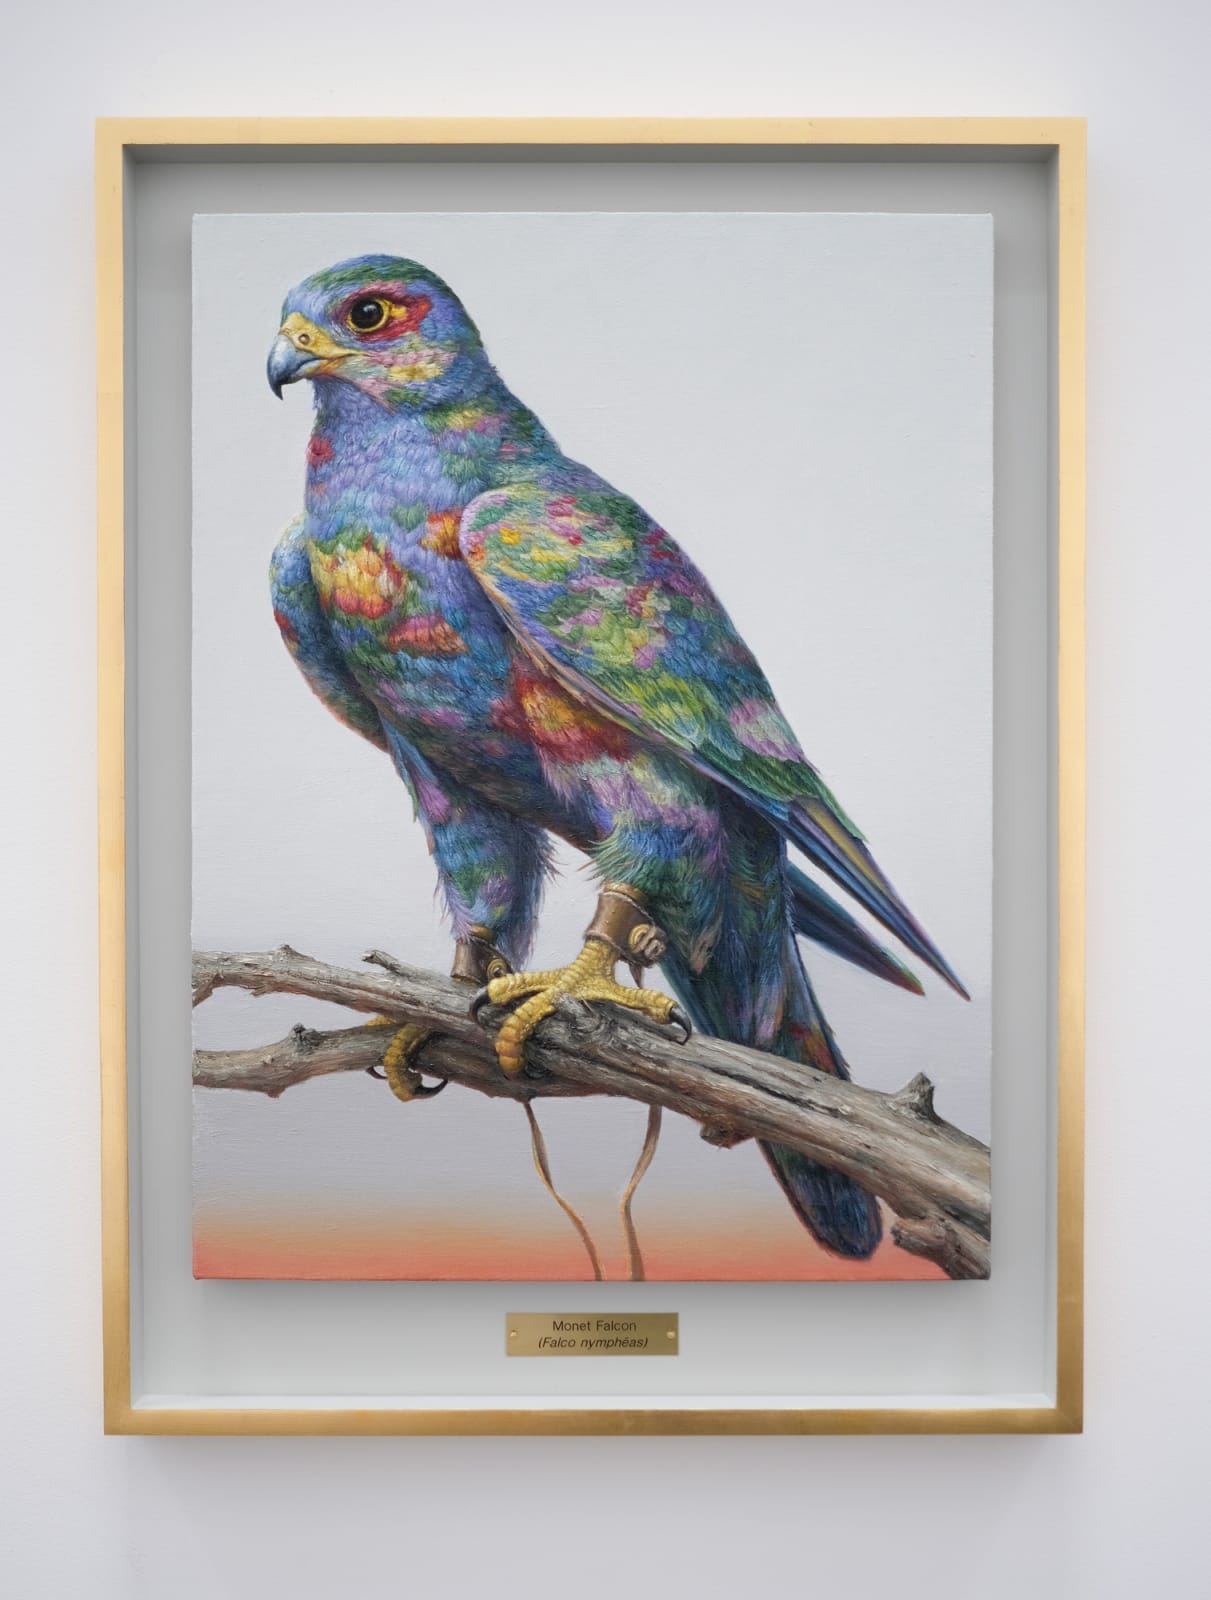 Clive Smith, Monet Falcon (Falco nymphéas), 2021